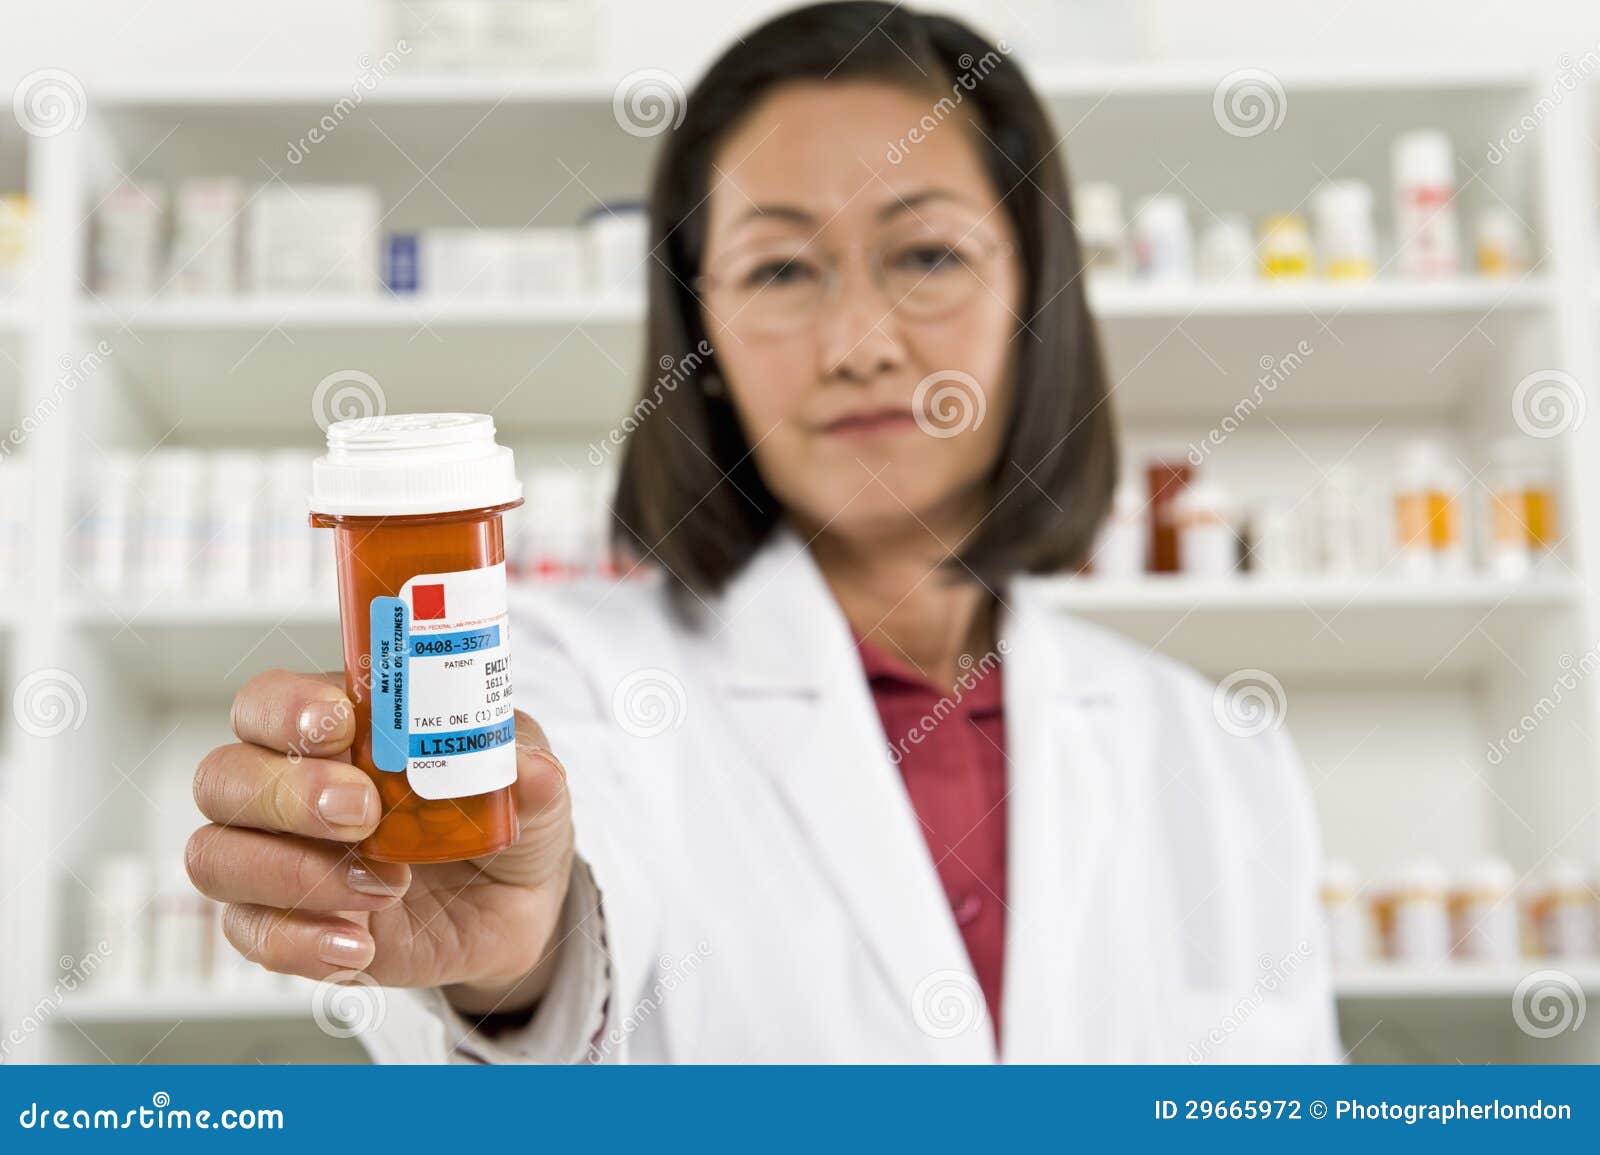 female pharmacist holding prescription drugs